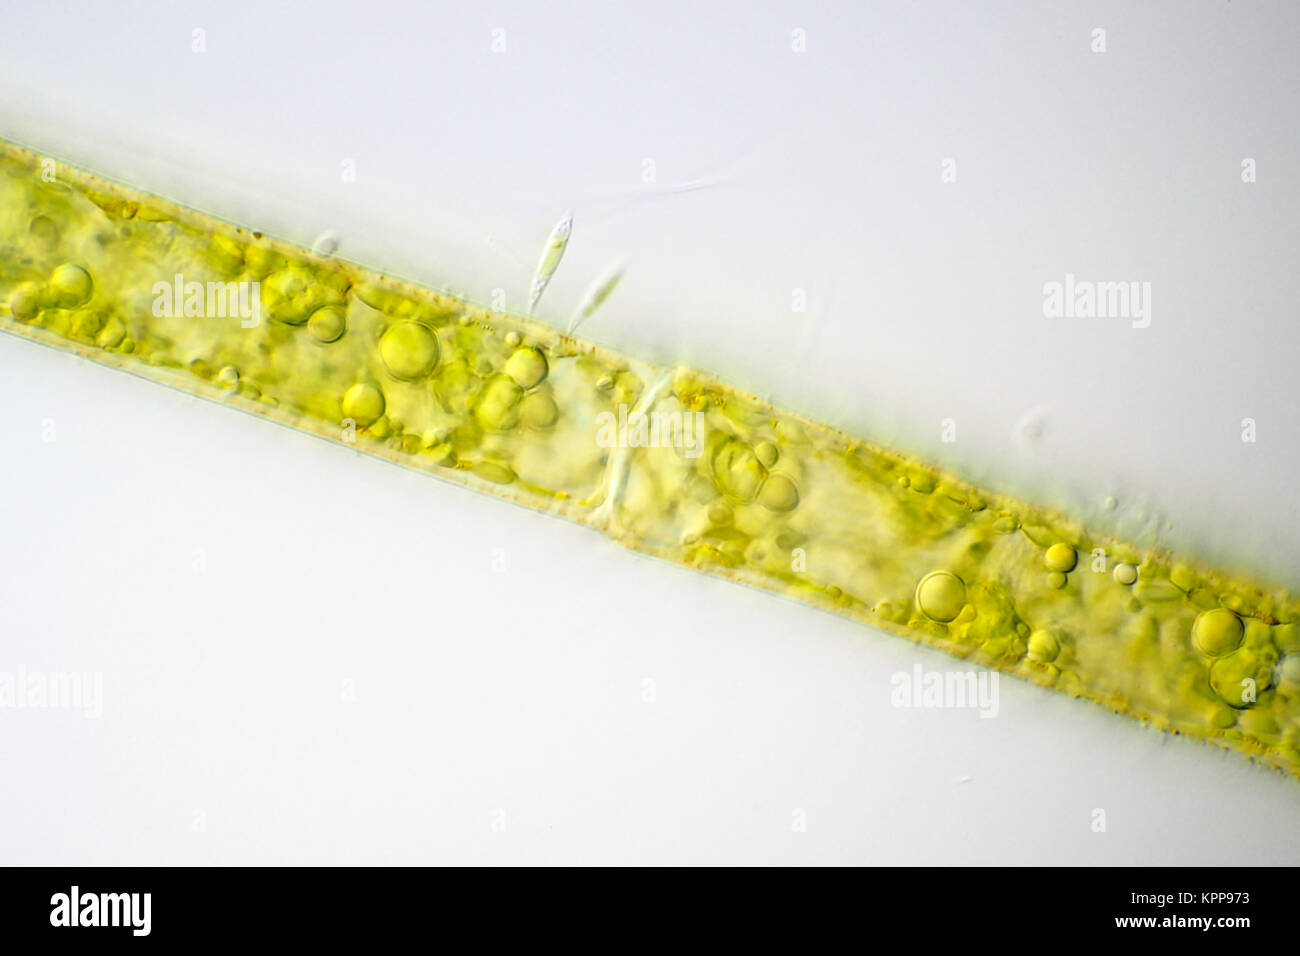 Brillante campo microfotografía de células de algas filamentosas, alga Characium adjunta foto de superficie es de unos 160 micrómetros de ancho Foto de stock